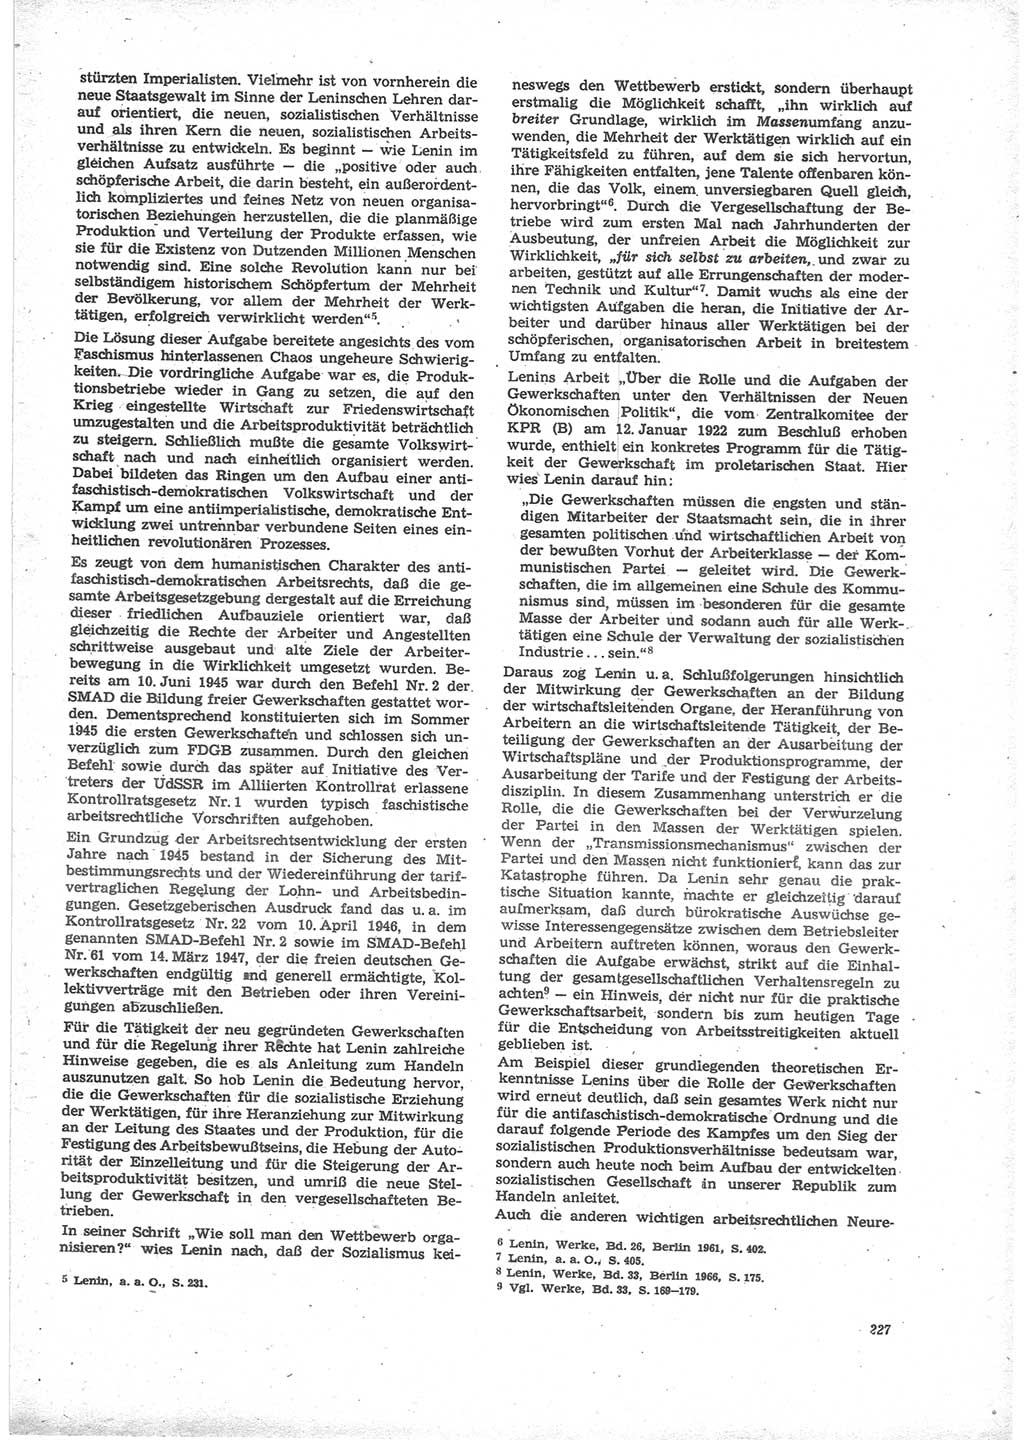 Neue Justiz (NJ), Zeitschrift für Recht und Rechtswissenschaft [Deutsche Demokratische Republik (DDR)], 24. Jahrgang 1970, Seite 227 (NJ DDR 1970, S. 227)